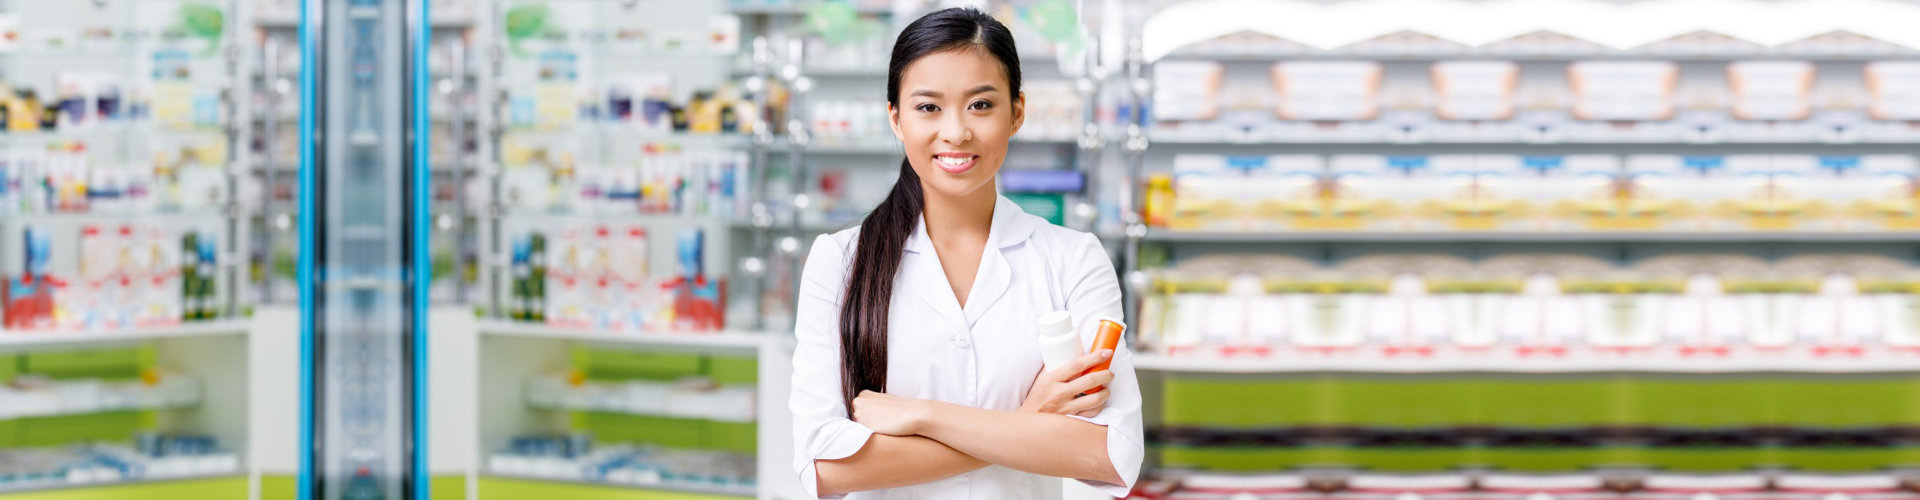 a female pharmacist